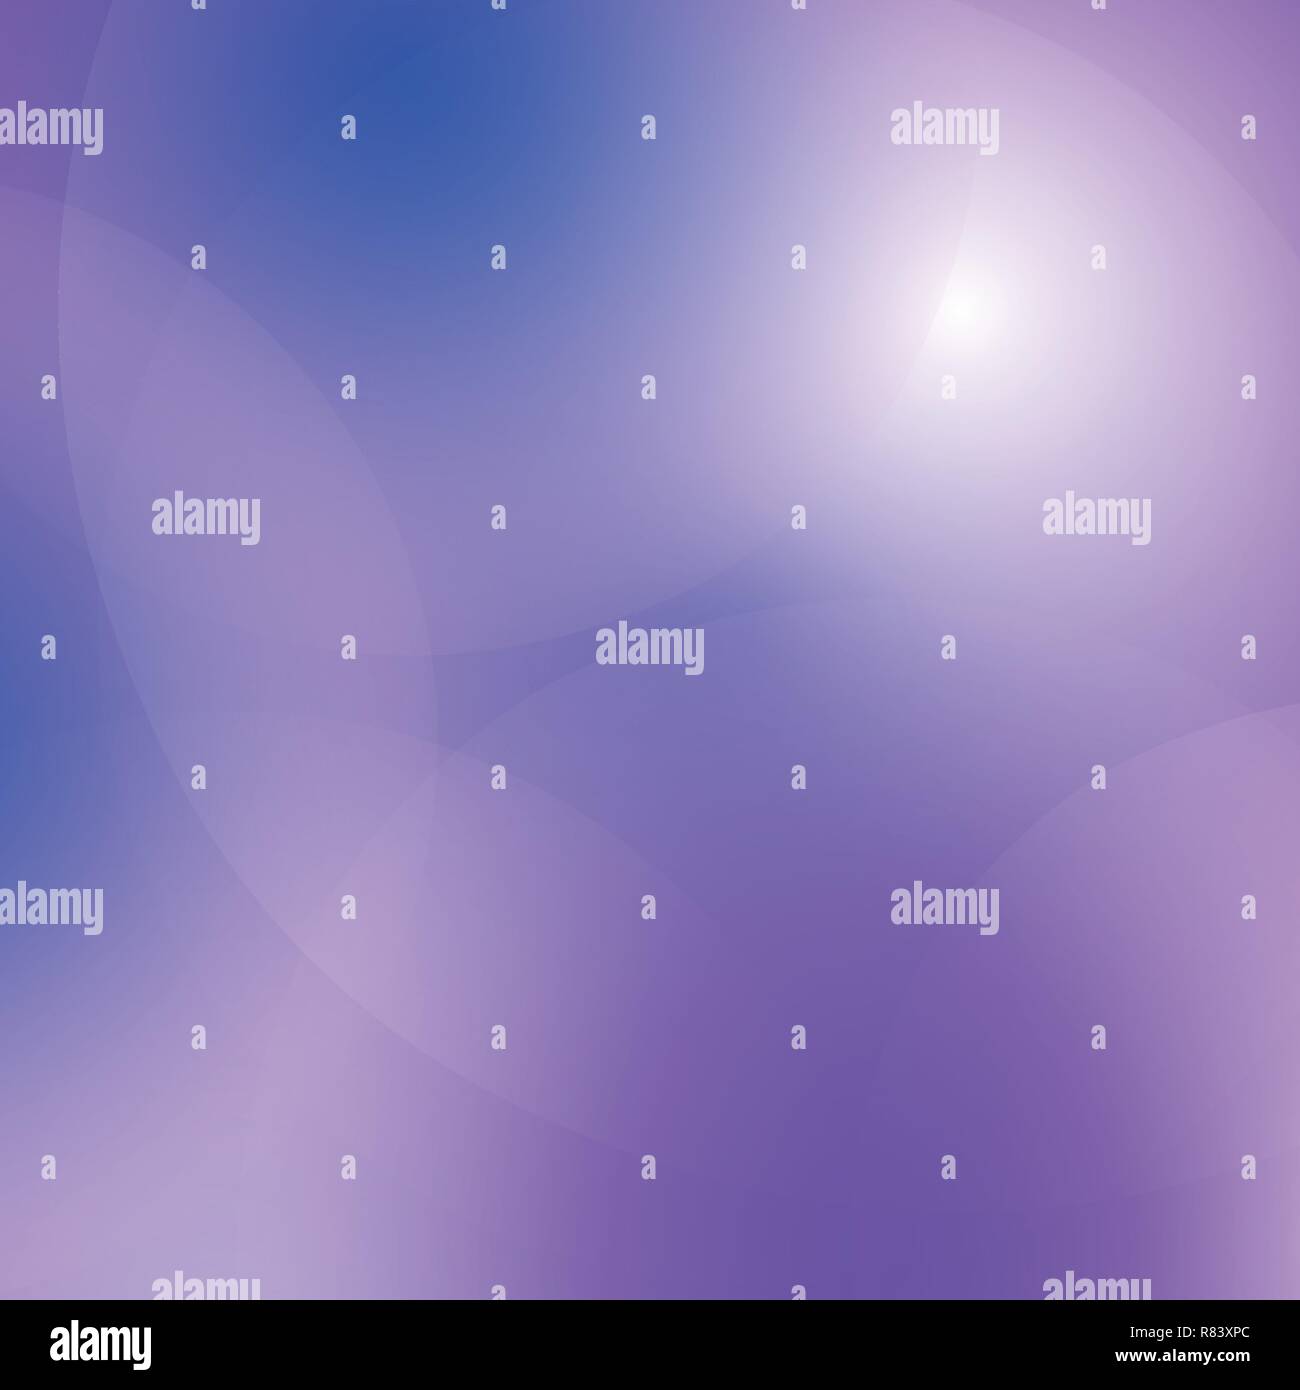 Abstrakt Blau Lila unscharfer Farbübergang Hintergrund. Natur Kulisse. Vector Illustration für ihre Grafik Design, Banner oder Poster. Stock Vektor